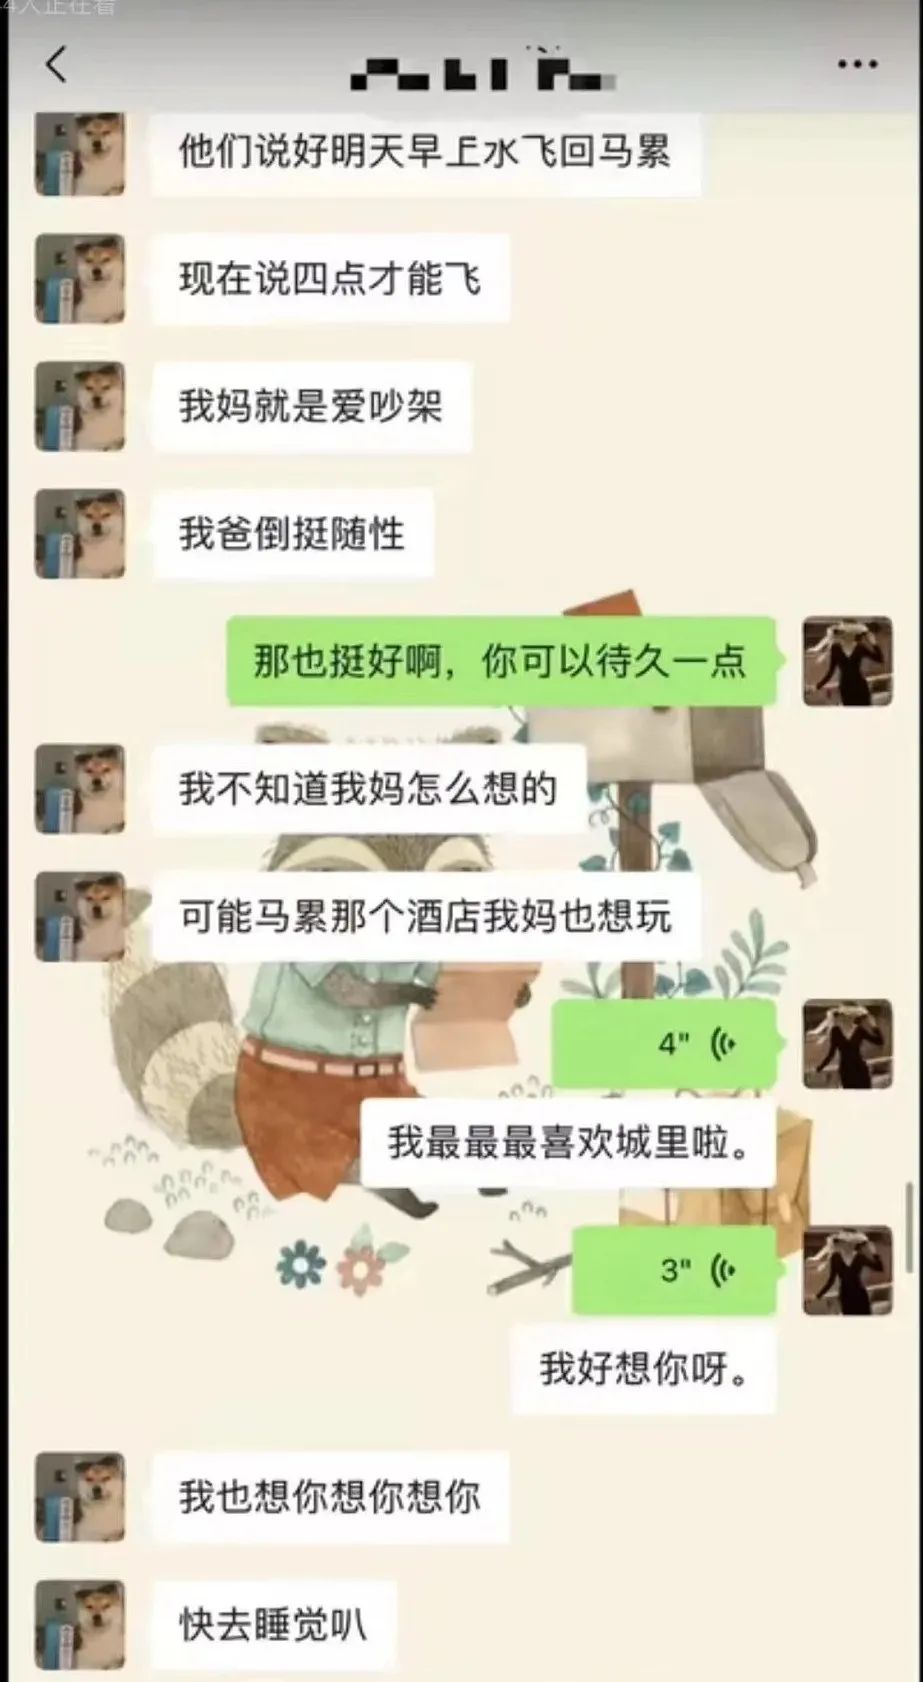 上海女老师出轨16岁学生被举报！照片曝光、聊天记录毁三观（曝光照片、聊天记录详情）